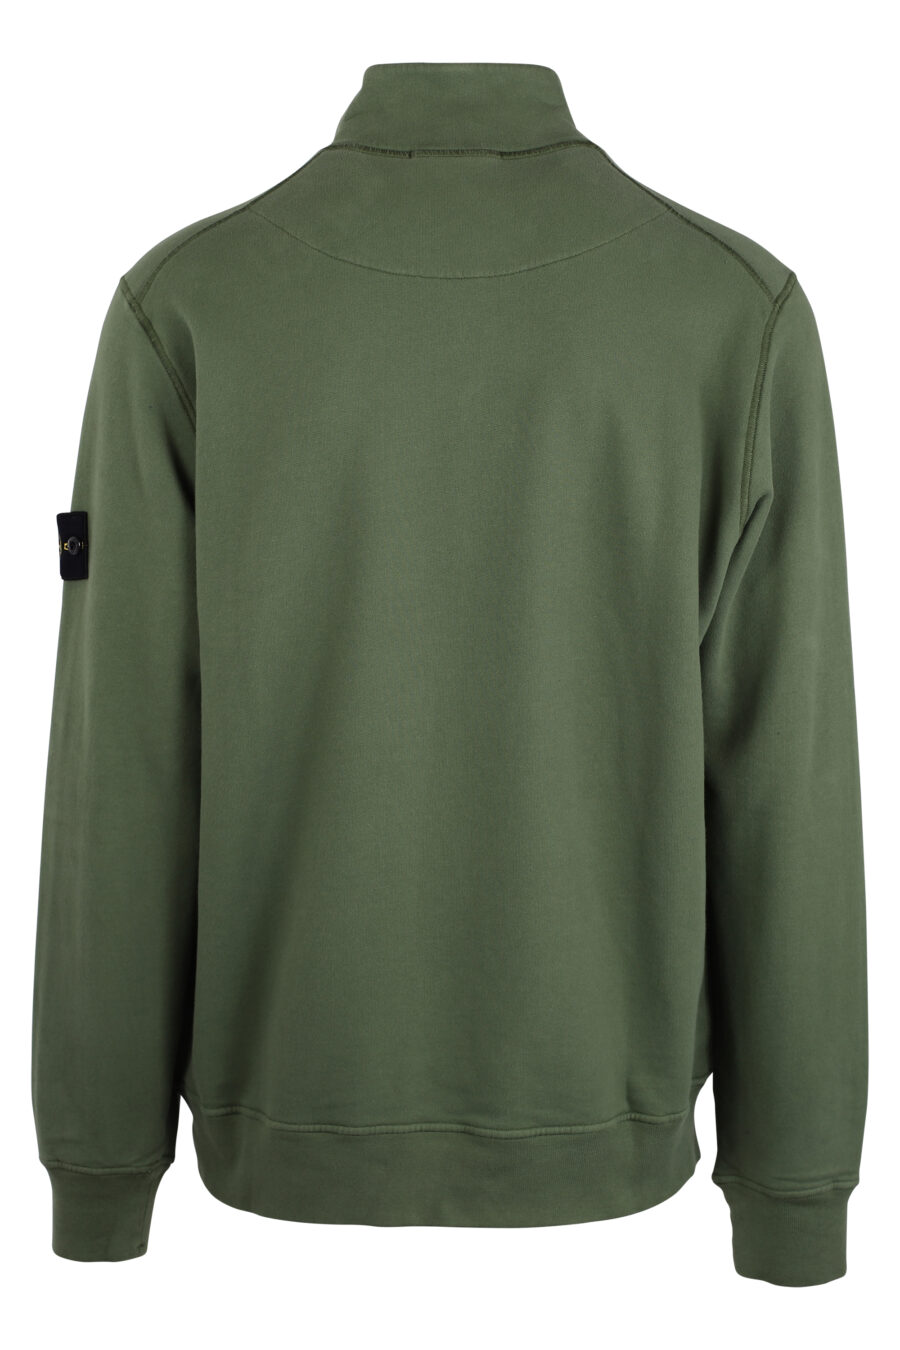 Sweat-shirt vert militaire avec fermeture à glissière courte et écusson - IMG 4352